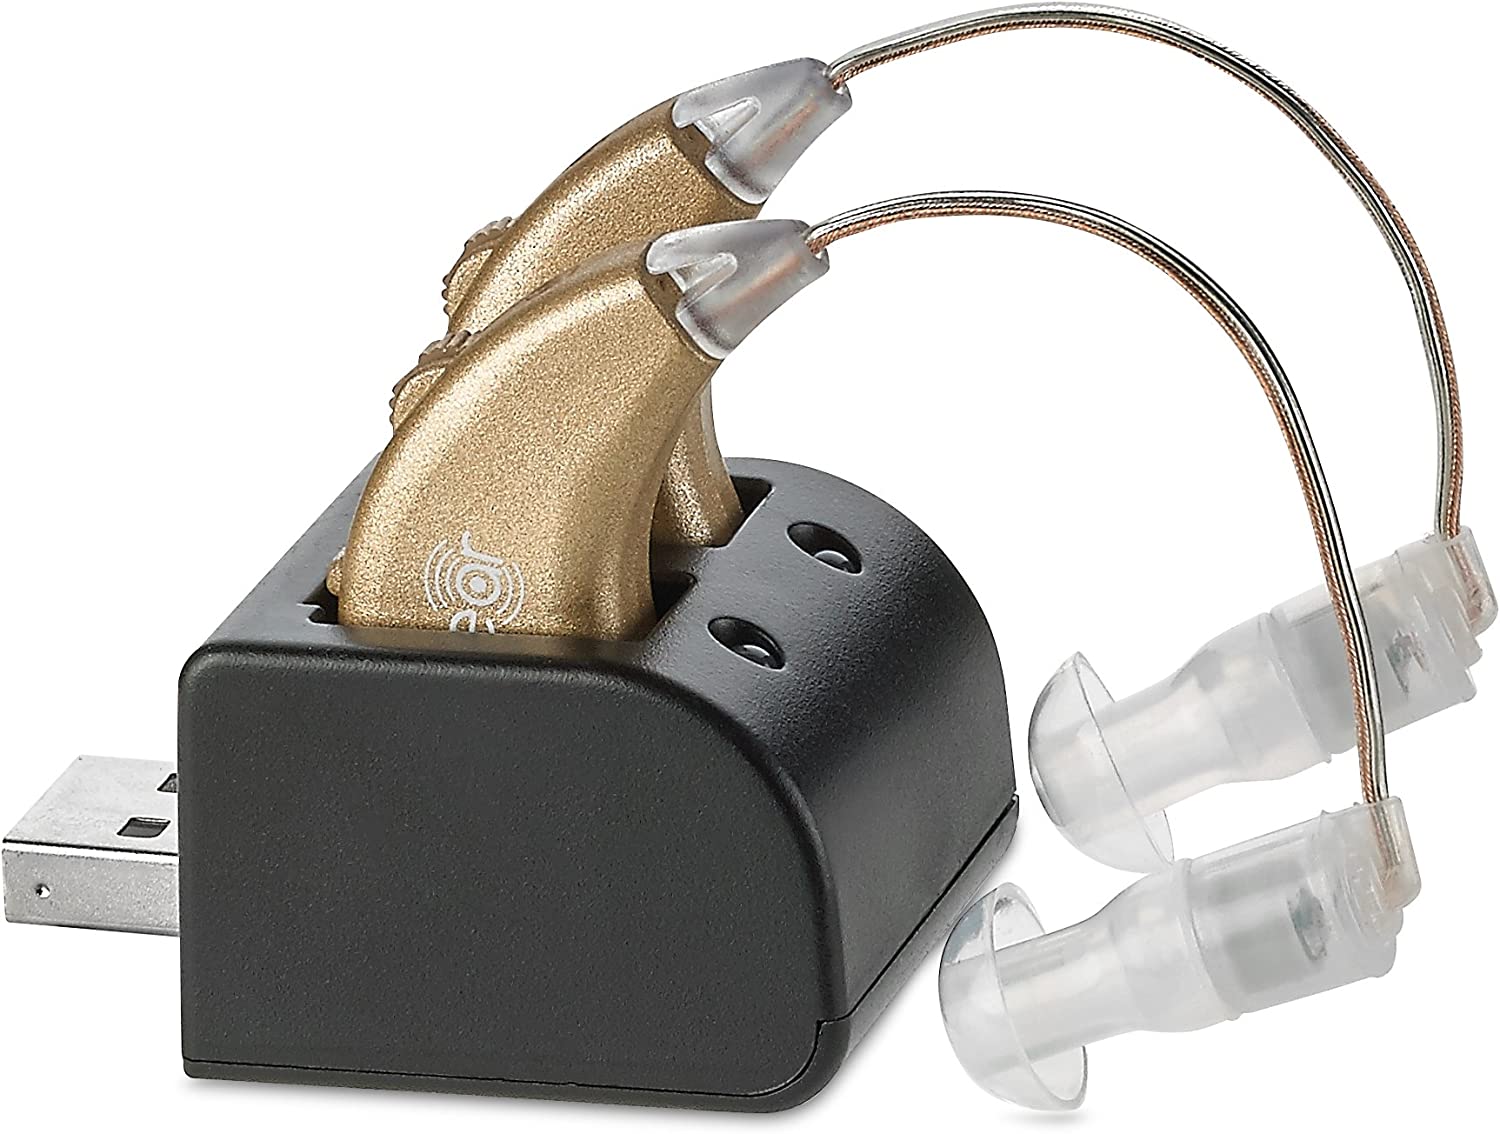 NewEar Ready-To-Use Digital Hearing Amplifier